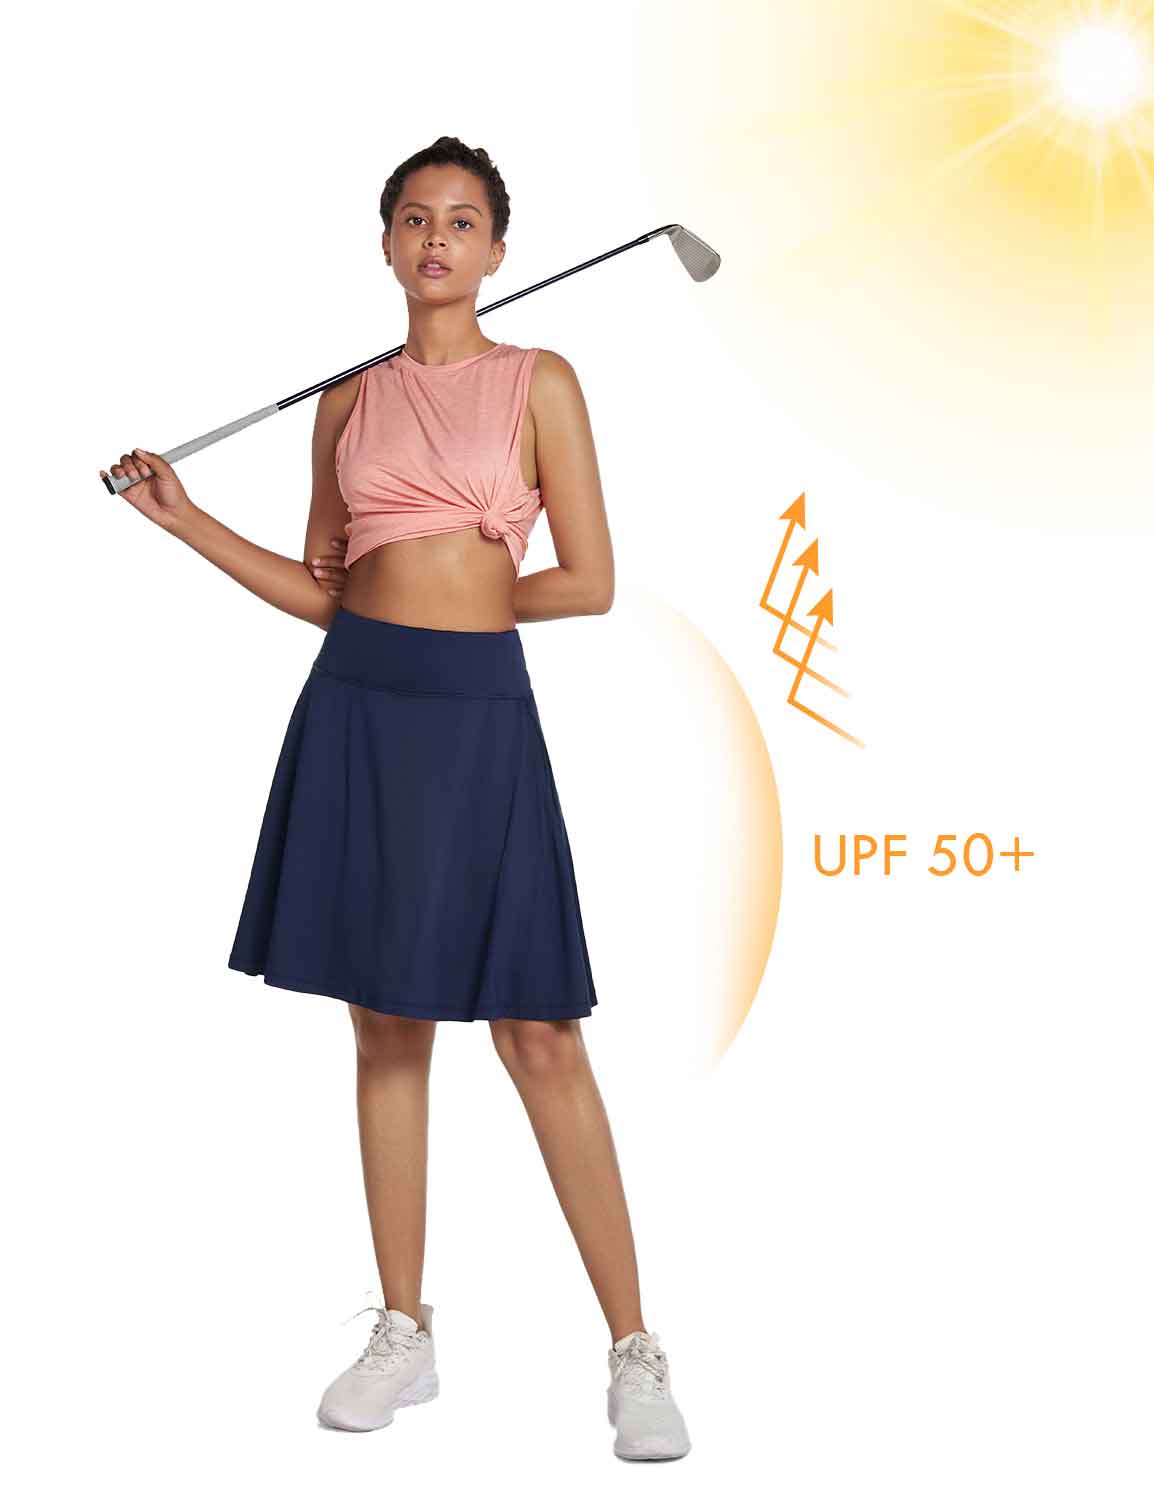 Baleaf Women's UPF 50+ Knee Length Golf Skorts w Pockets Peacoat Full